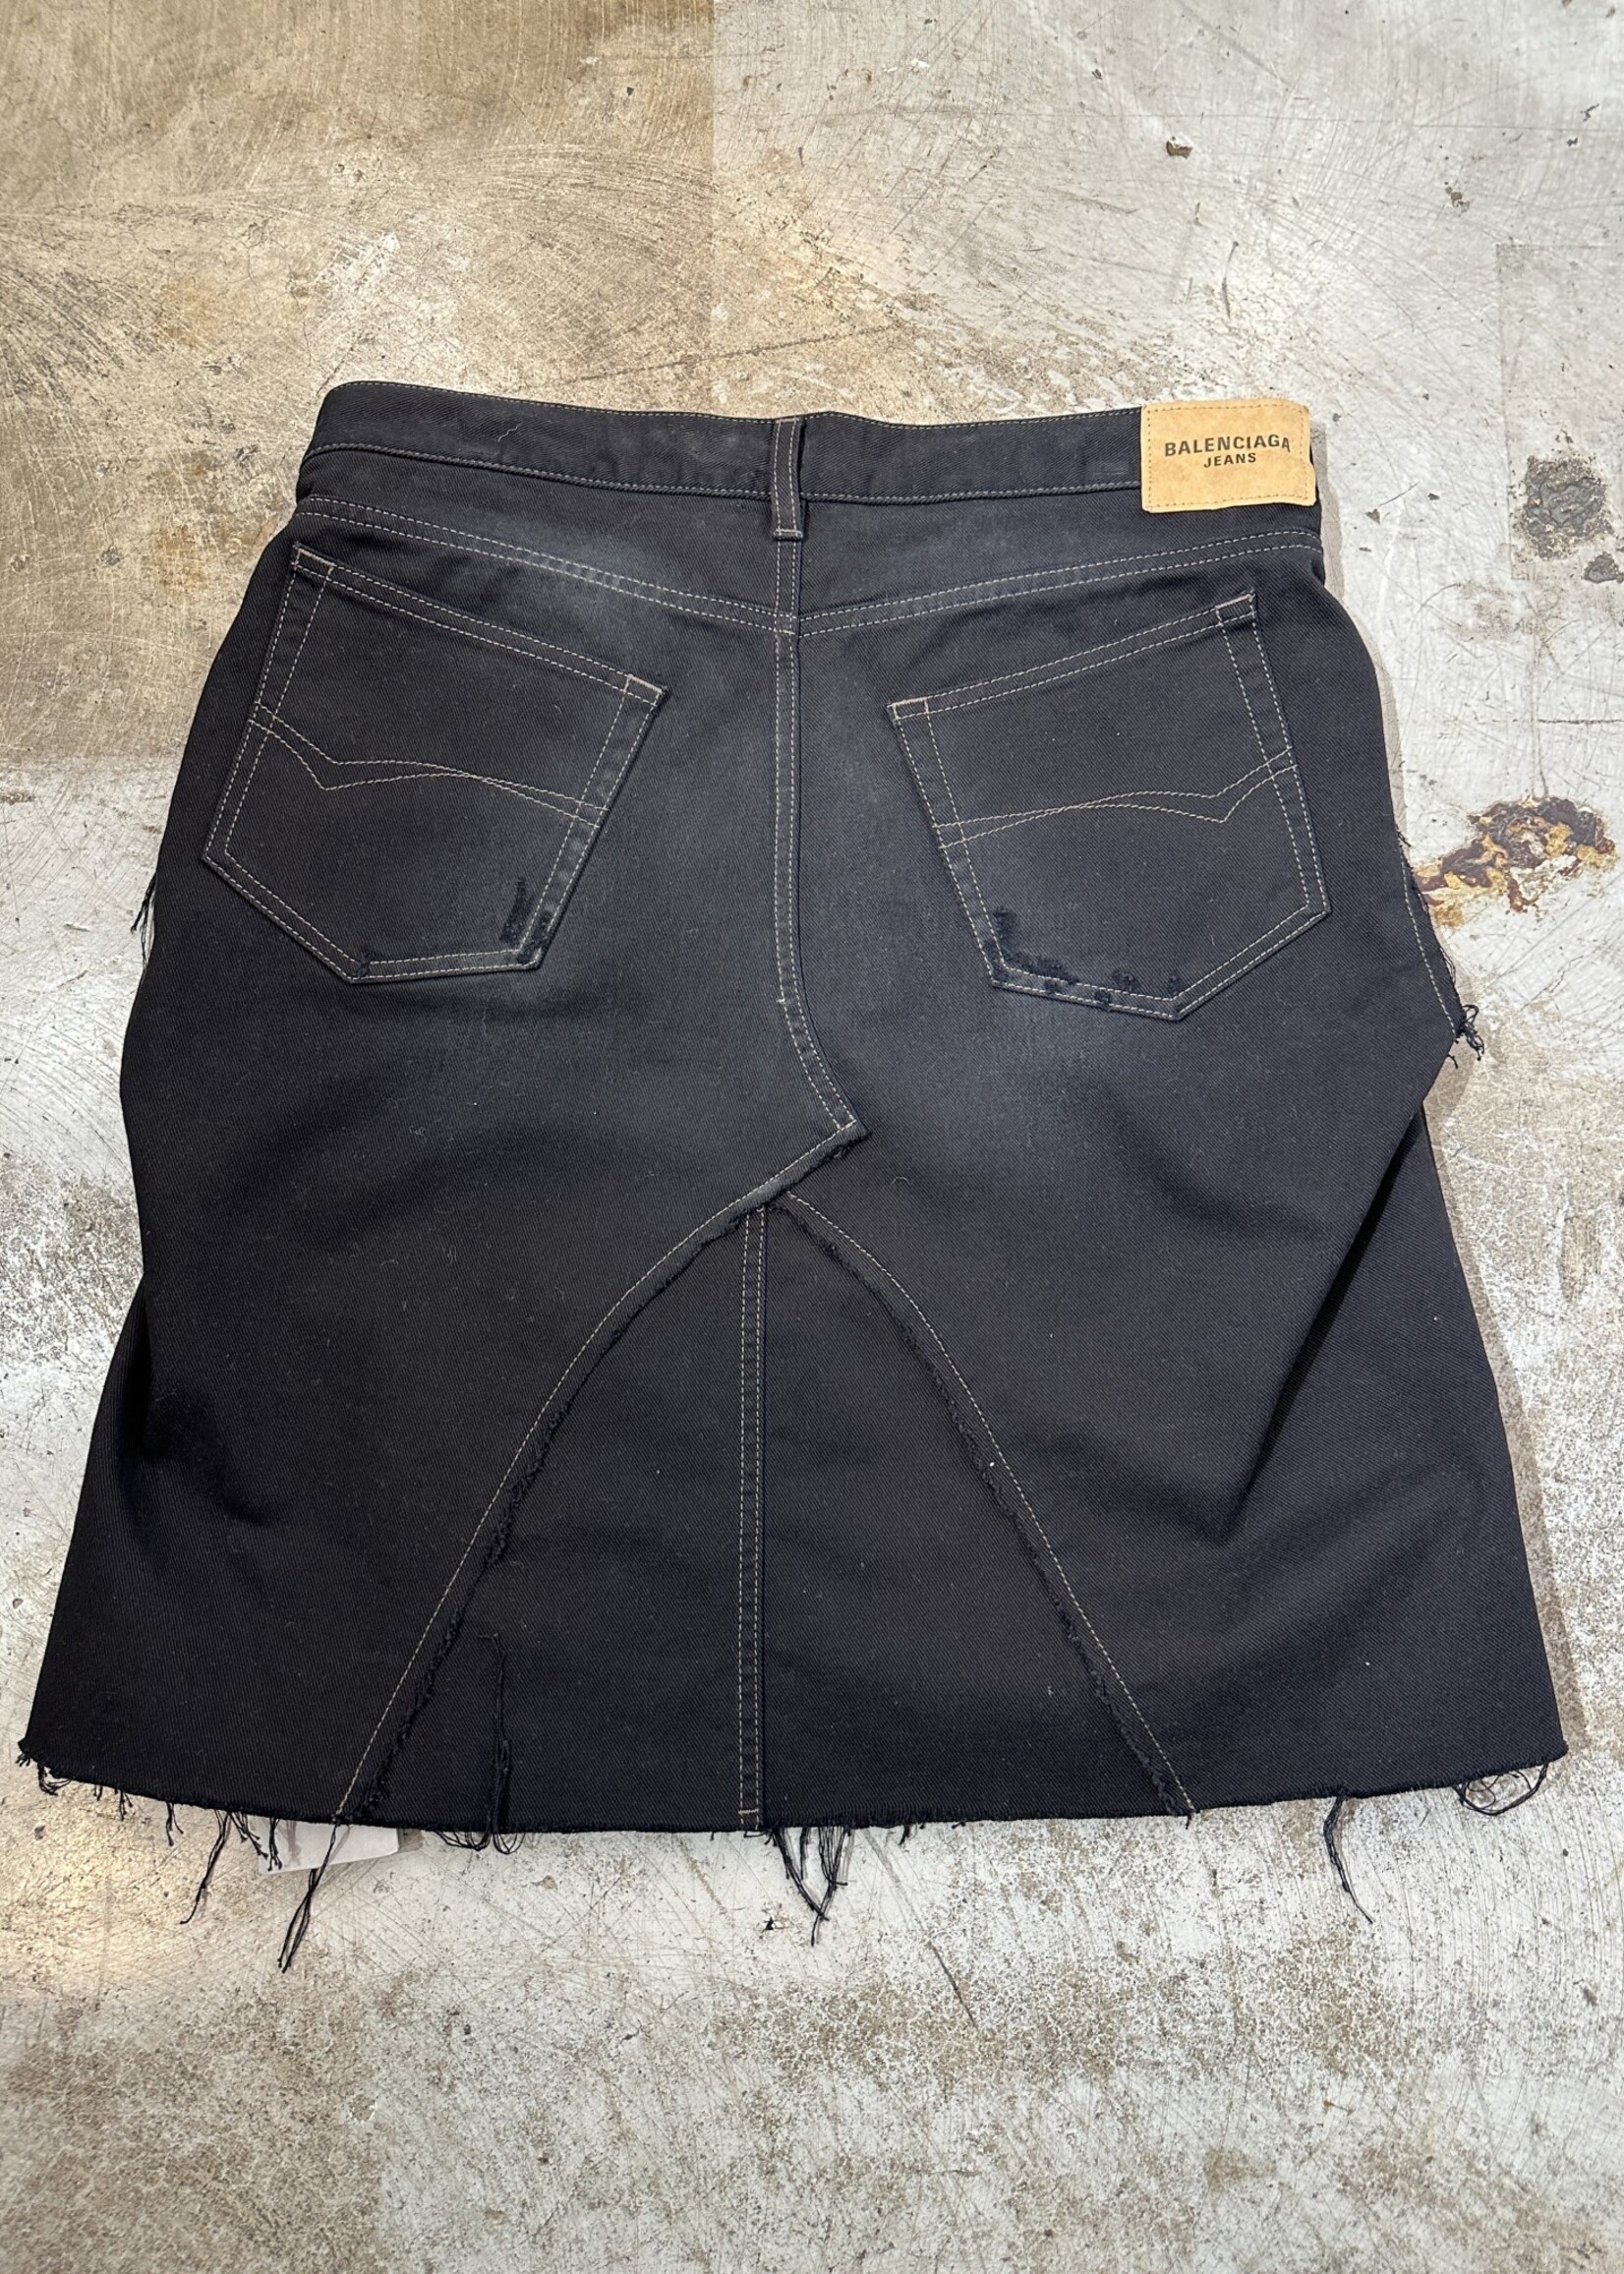 NWT Balenciaga Black Denim Cutout Skirt 27